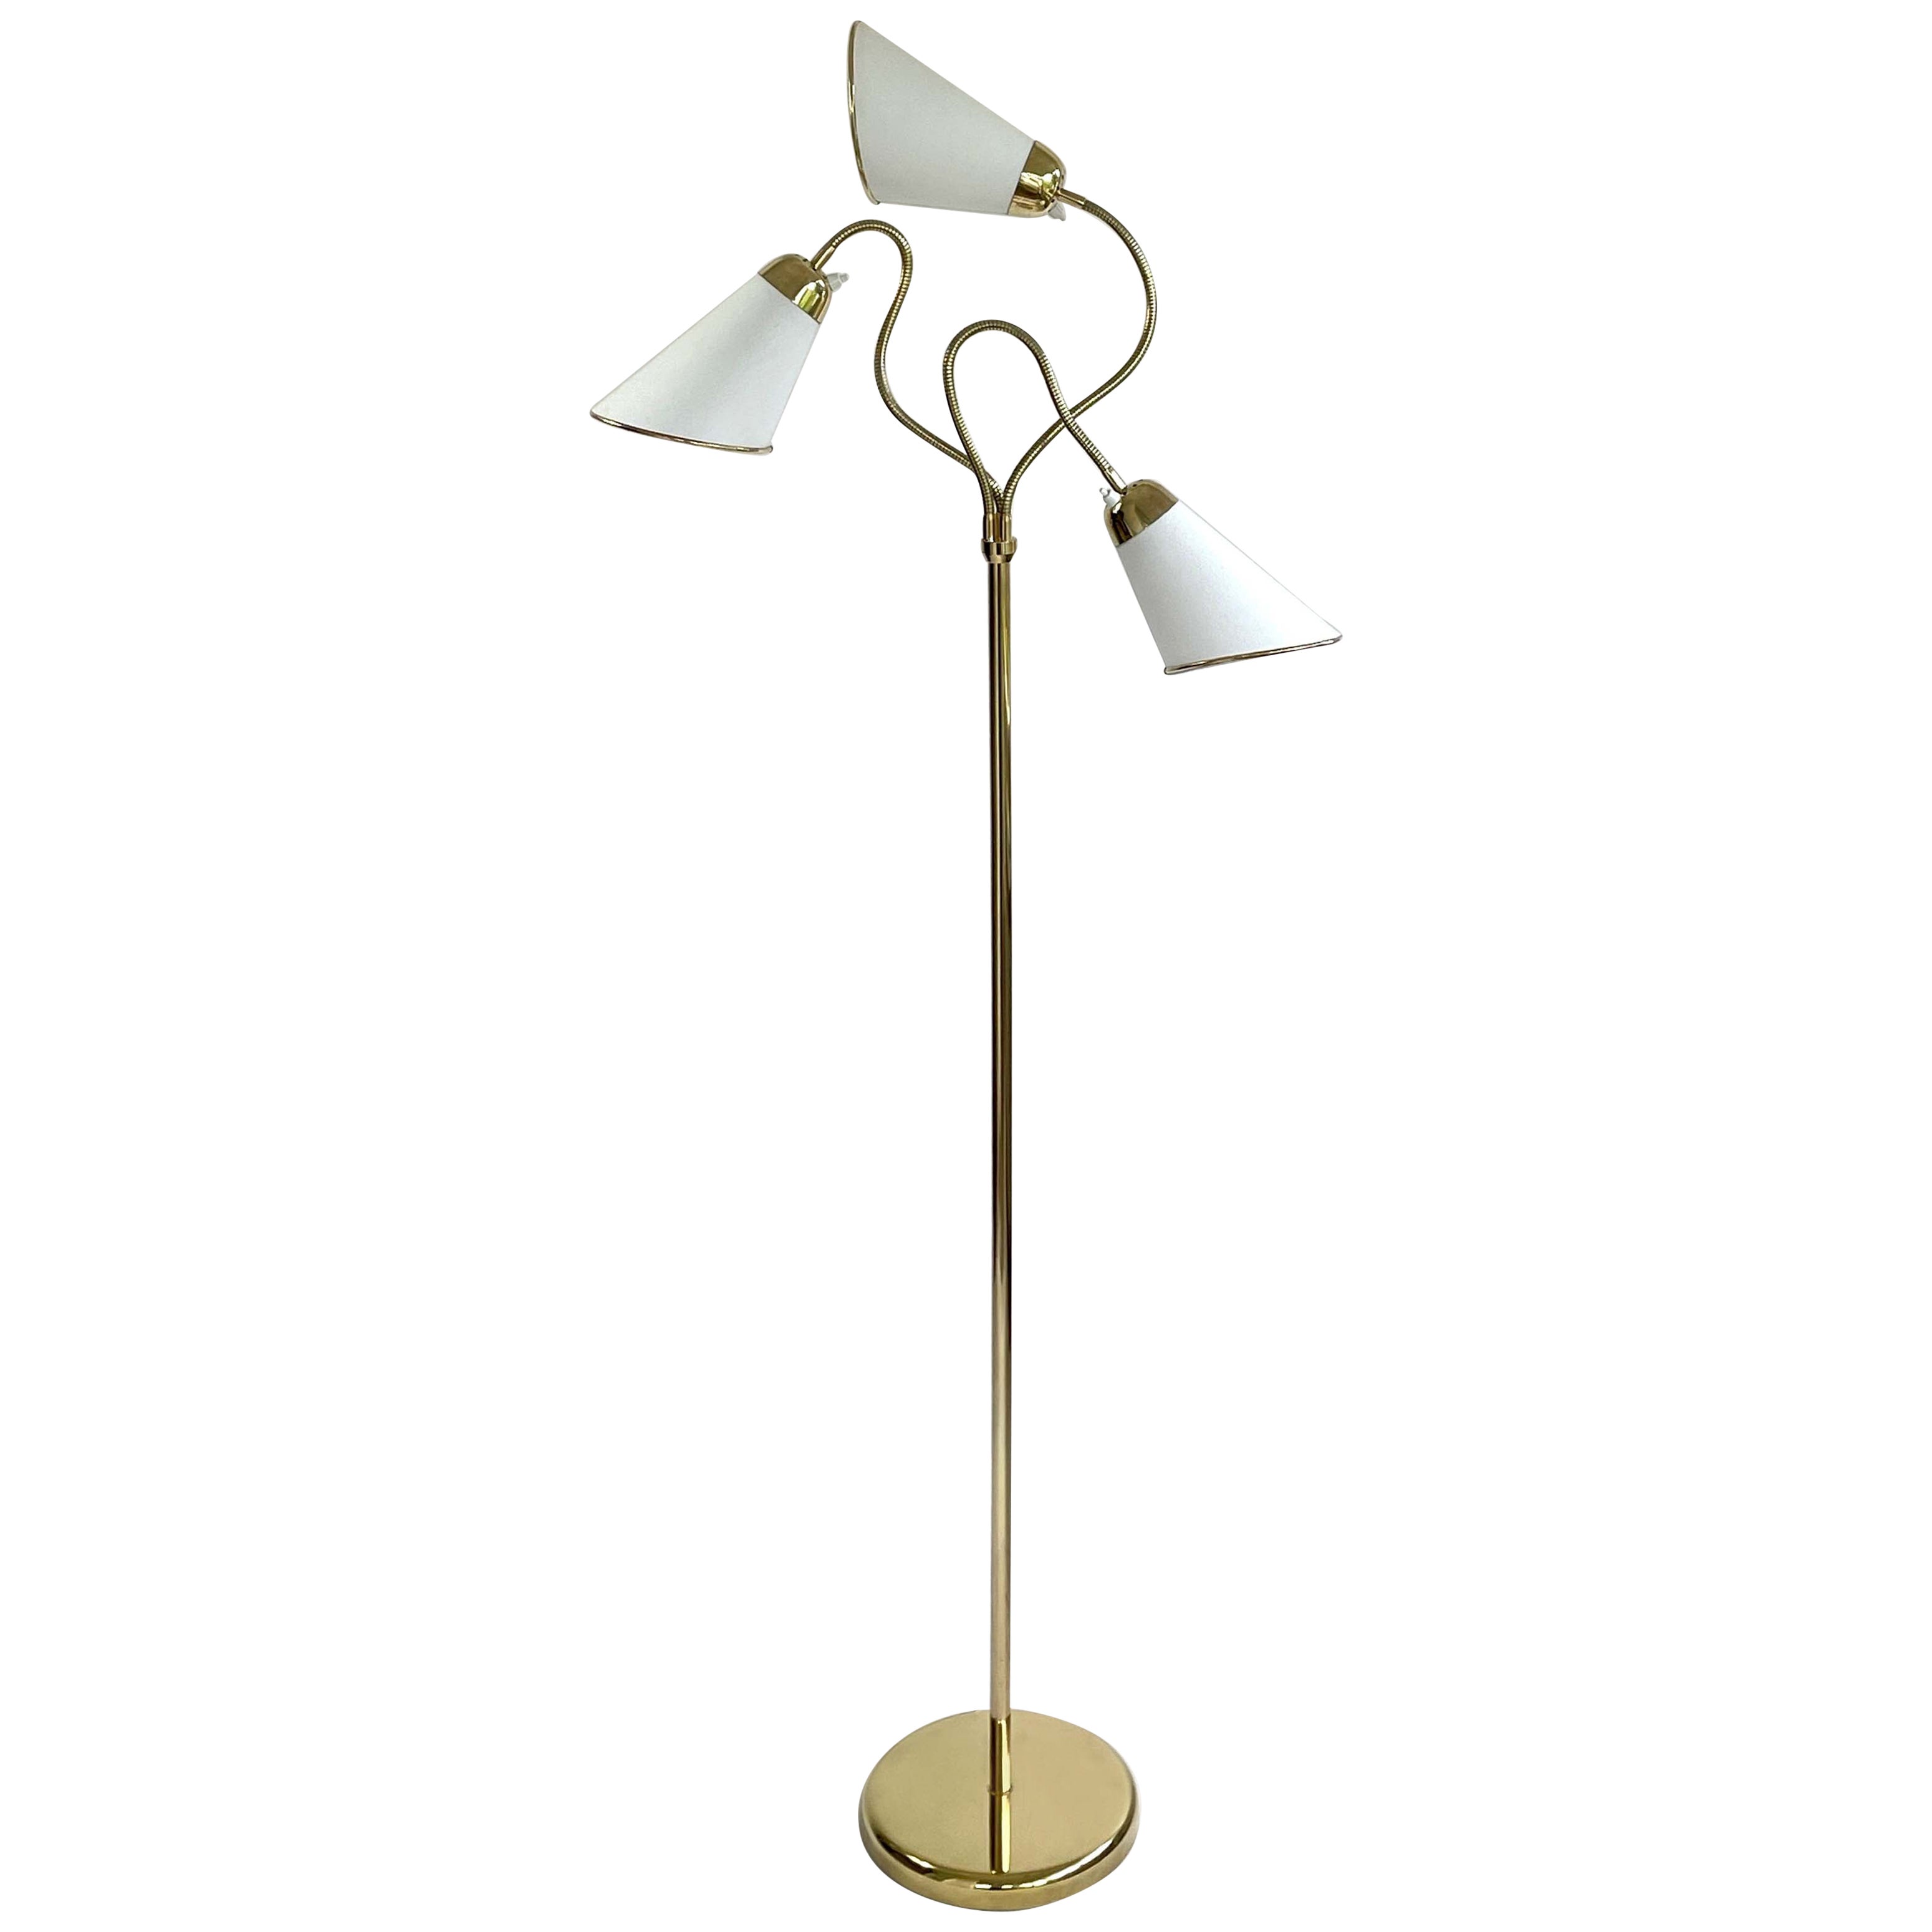 Triple Gooseneck Brass & Off White Fabric Floor Lamp, Sweden 1950s